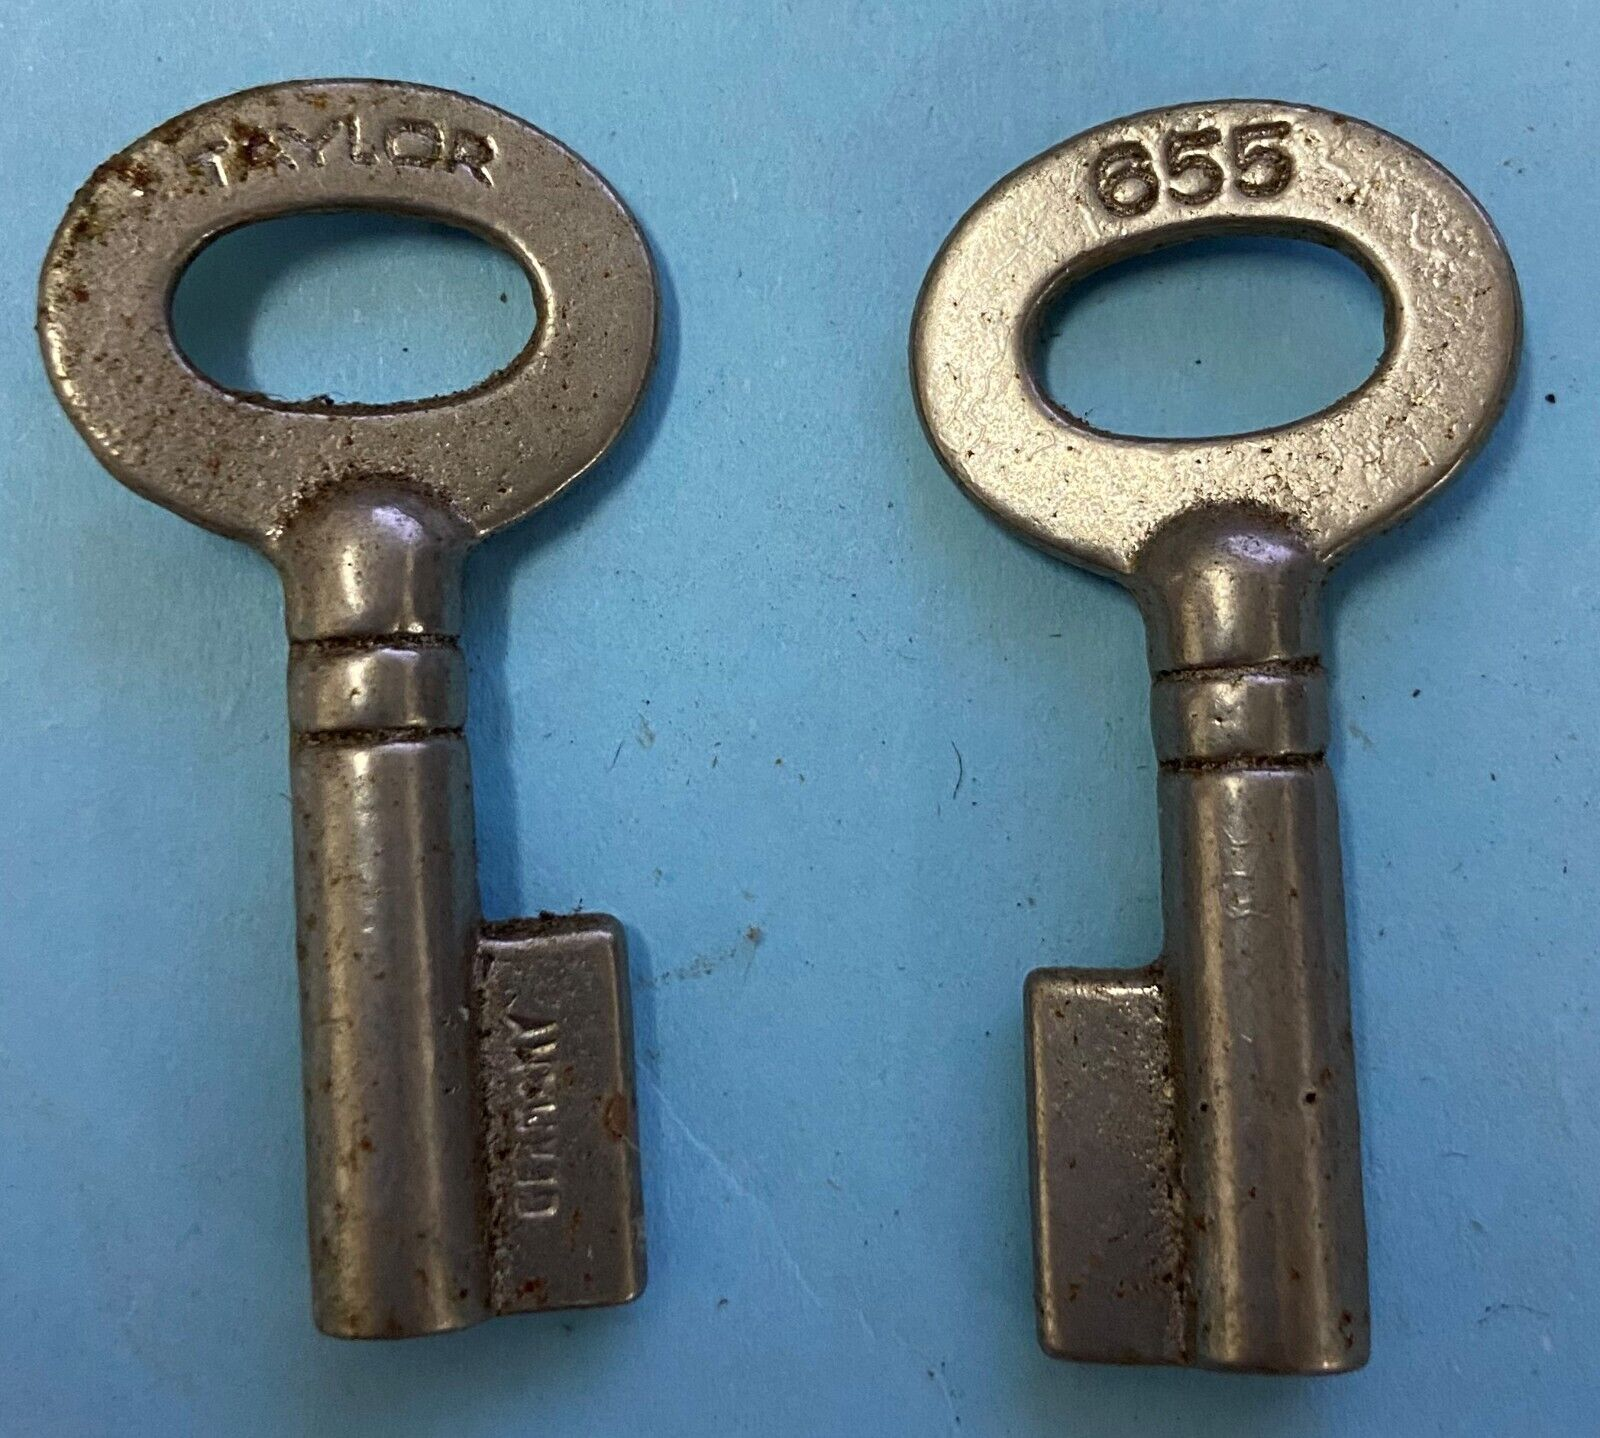 Bit and Barrel Keys